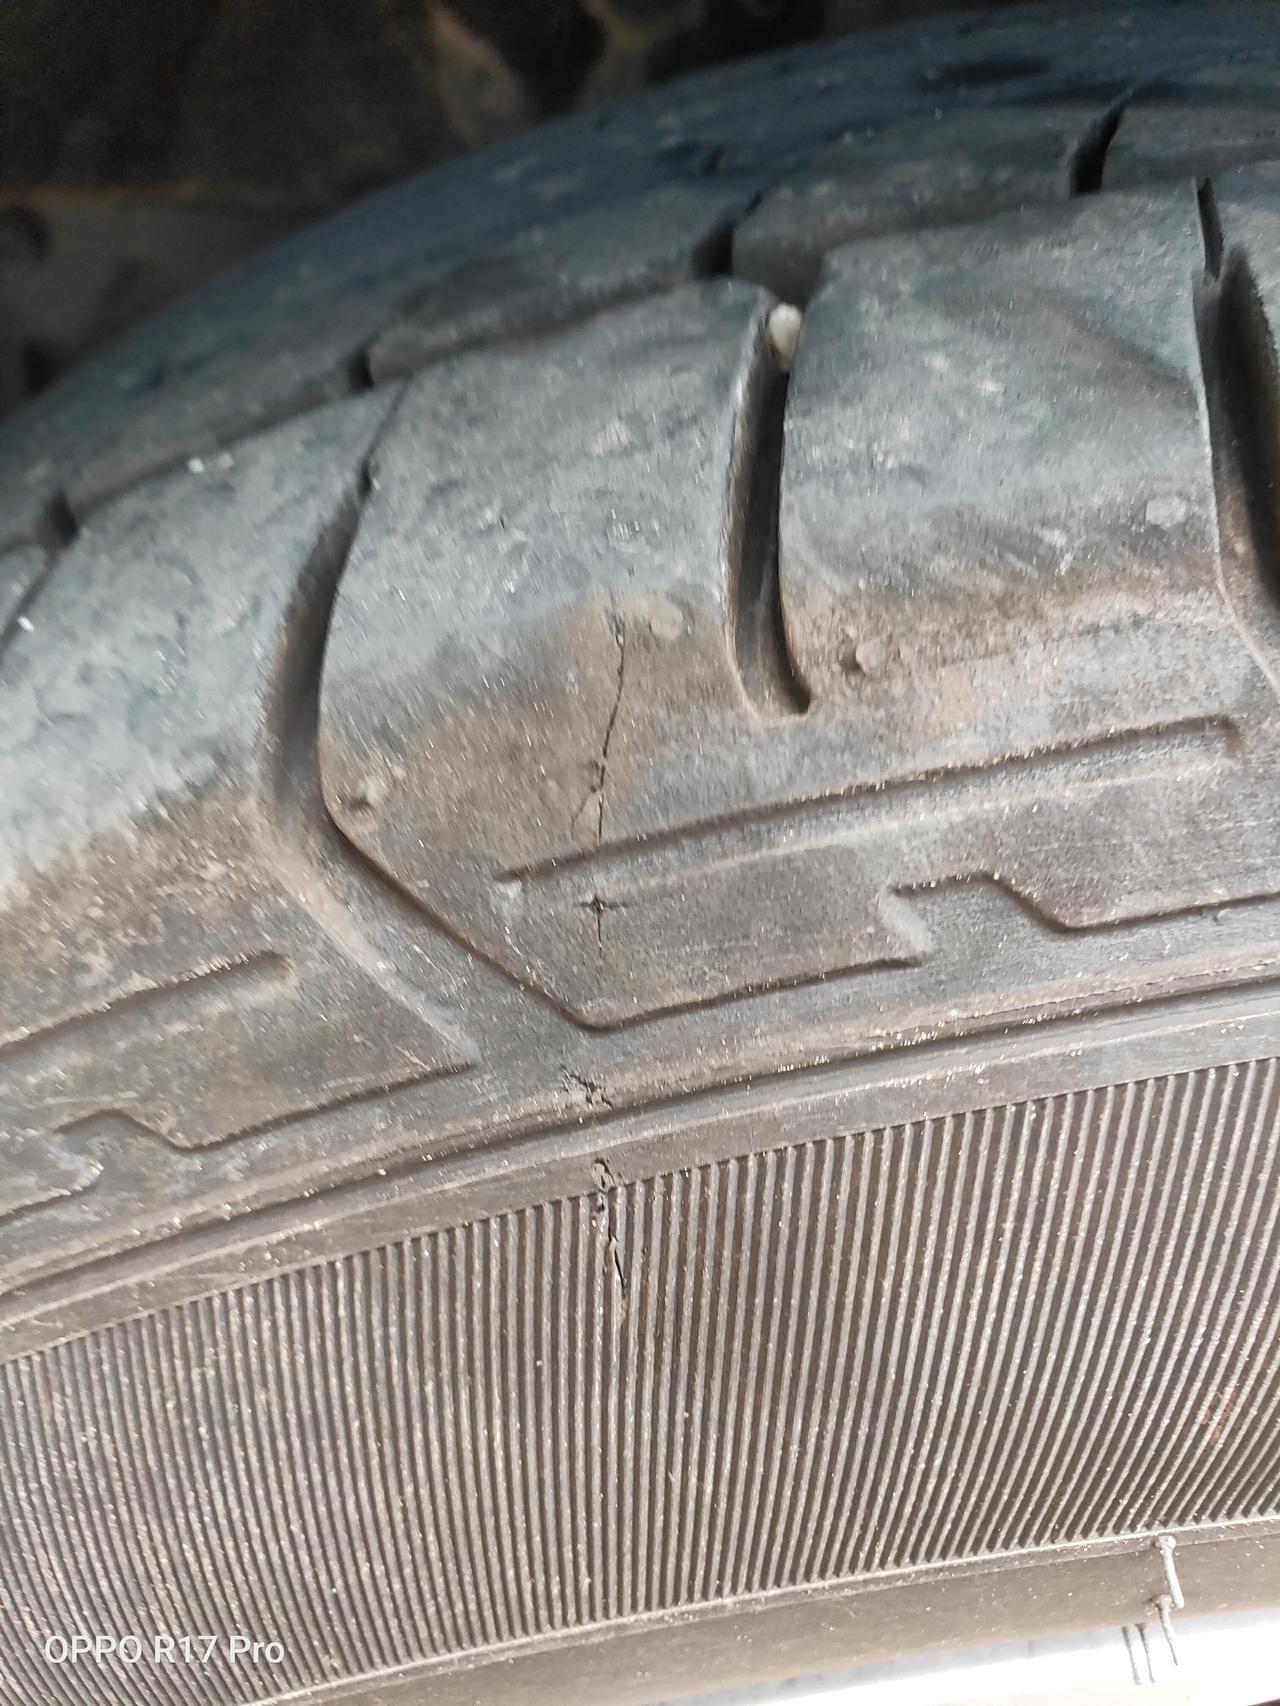 本田XR-V 刚看到，东风本田xrv ，轮胎被啥割了吧，才半年，我觉得应该影响不大吧，换个轮胎也要好多钱